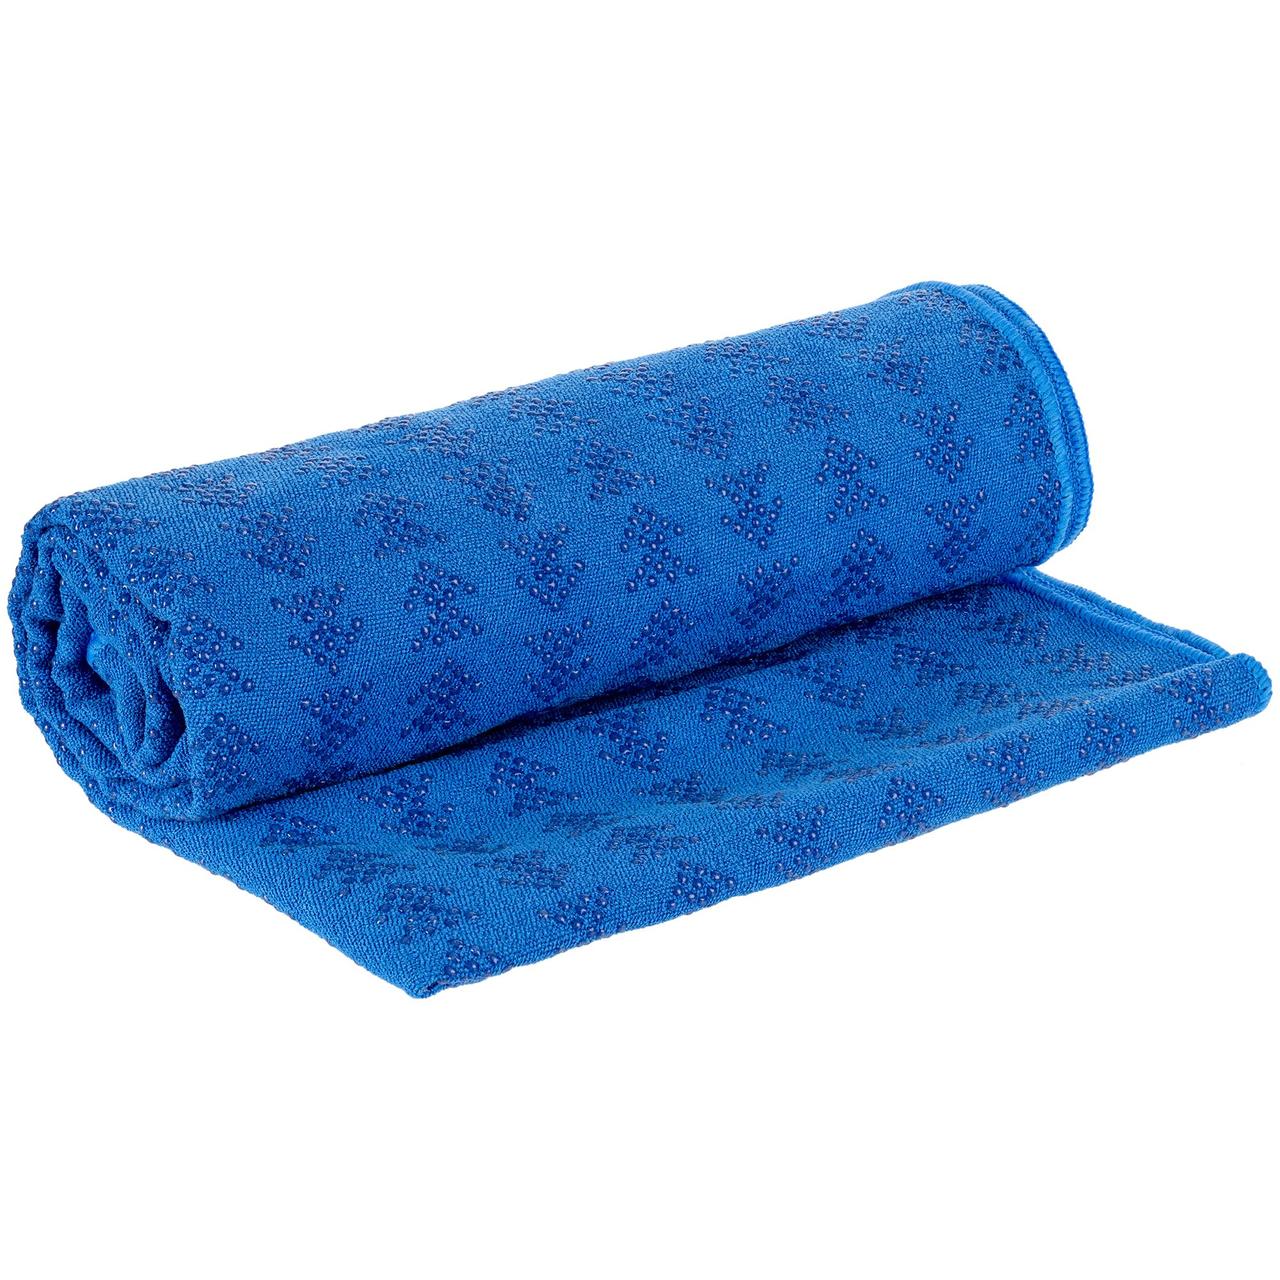 Полотенце-коврик для йоги Zen, синее (артикул 11923.40)